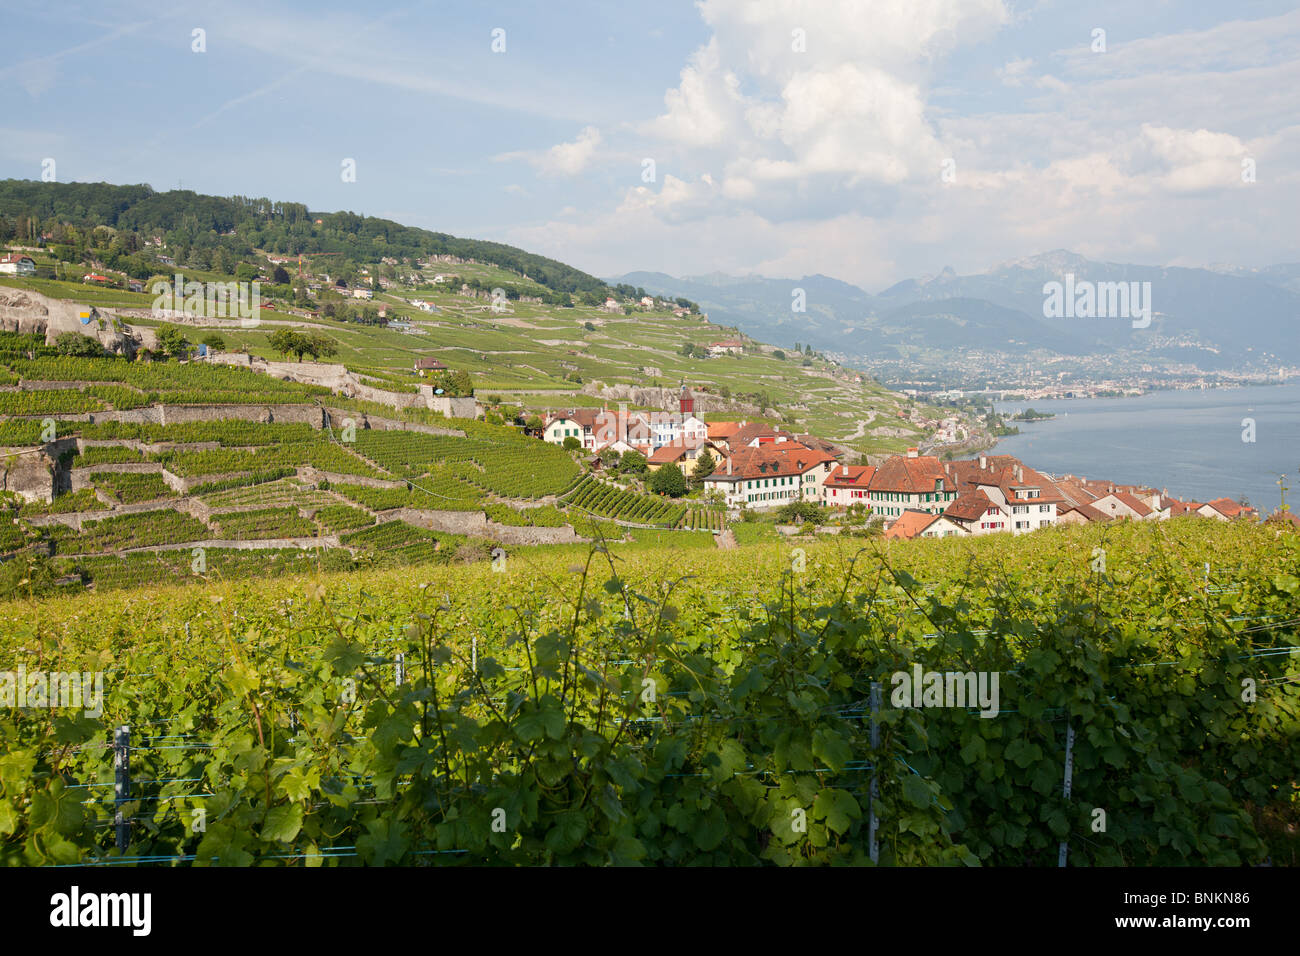 Vignobles en terrasses, Rivaz, Lavaux, lac de Genève, Suisse. Banque D'Images